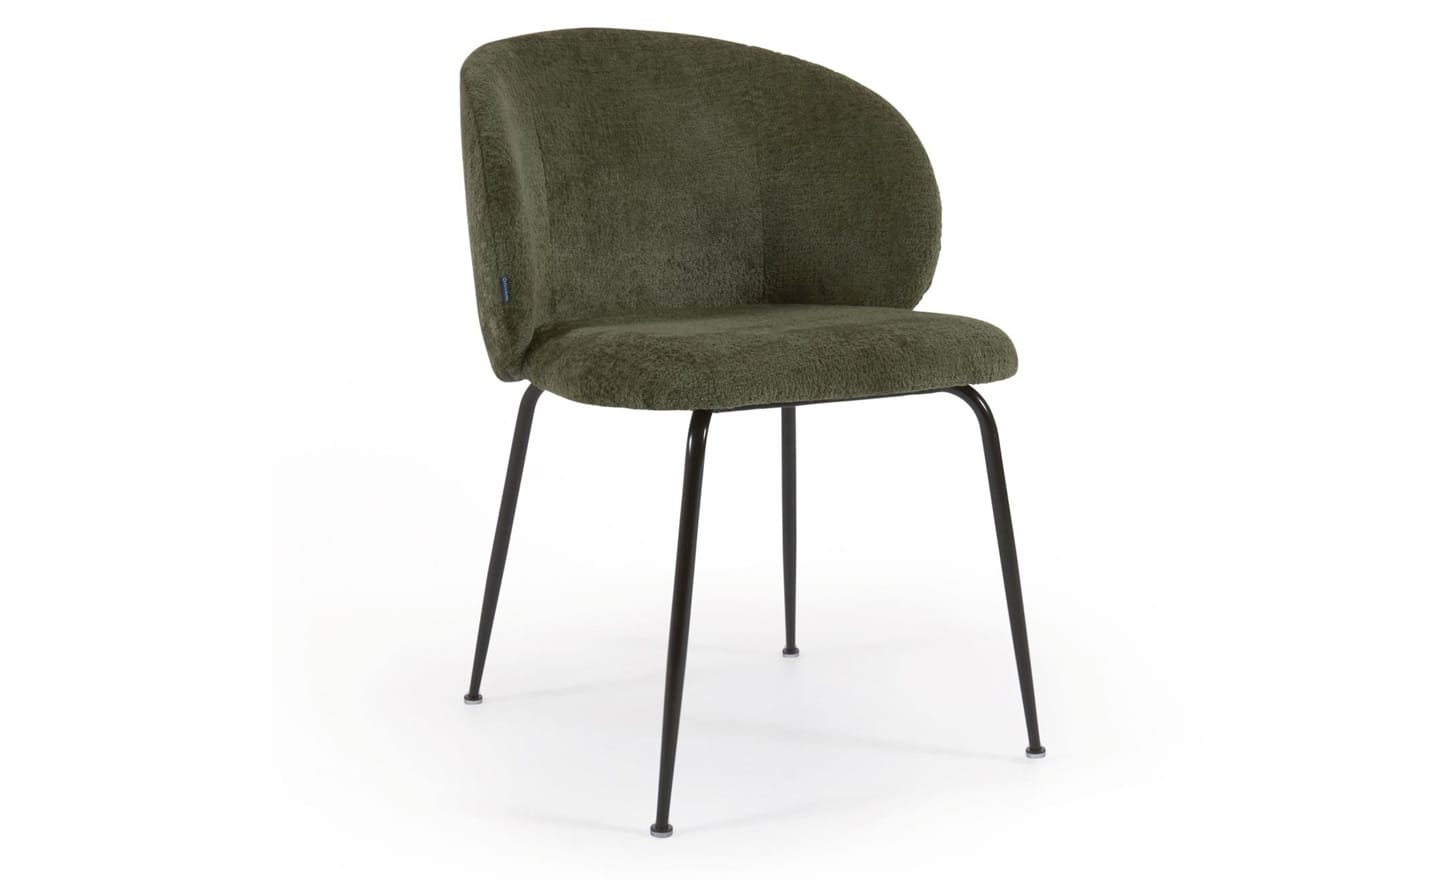 Cadeira Minna Chenille Verde, estofada em chenille verde, pernas de aço preto. Design moderno e elegante para espaços de refeição.